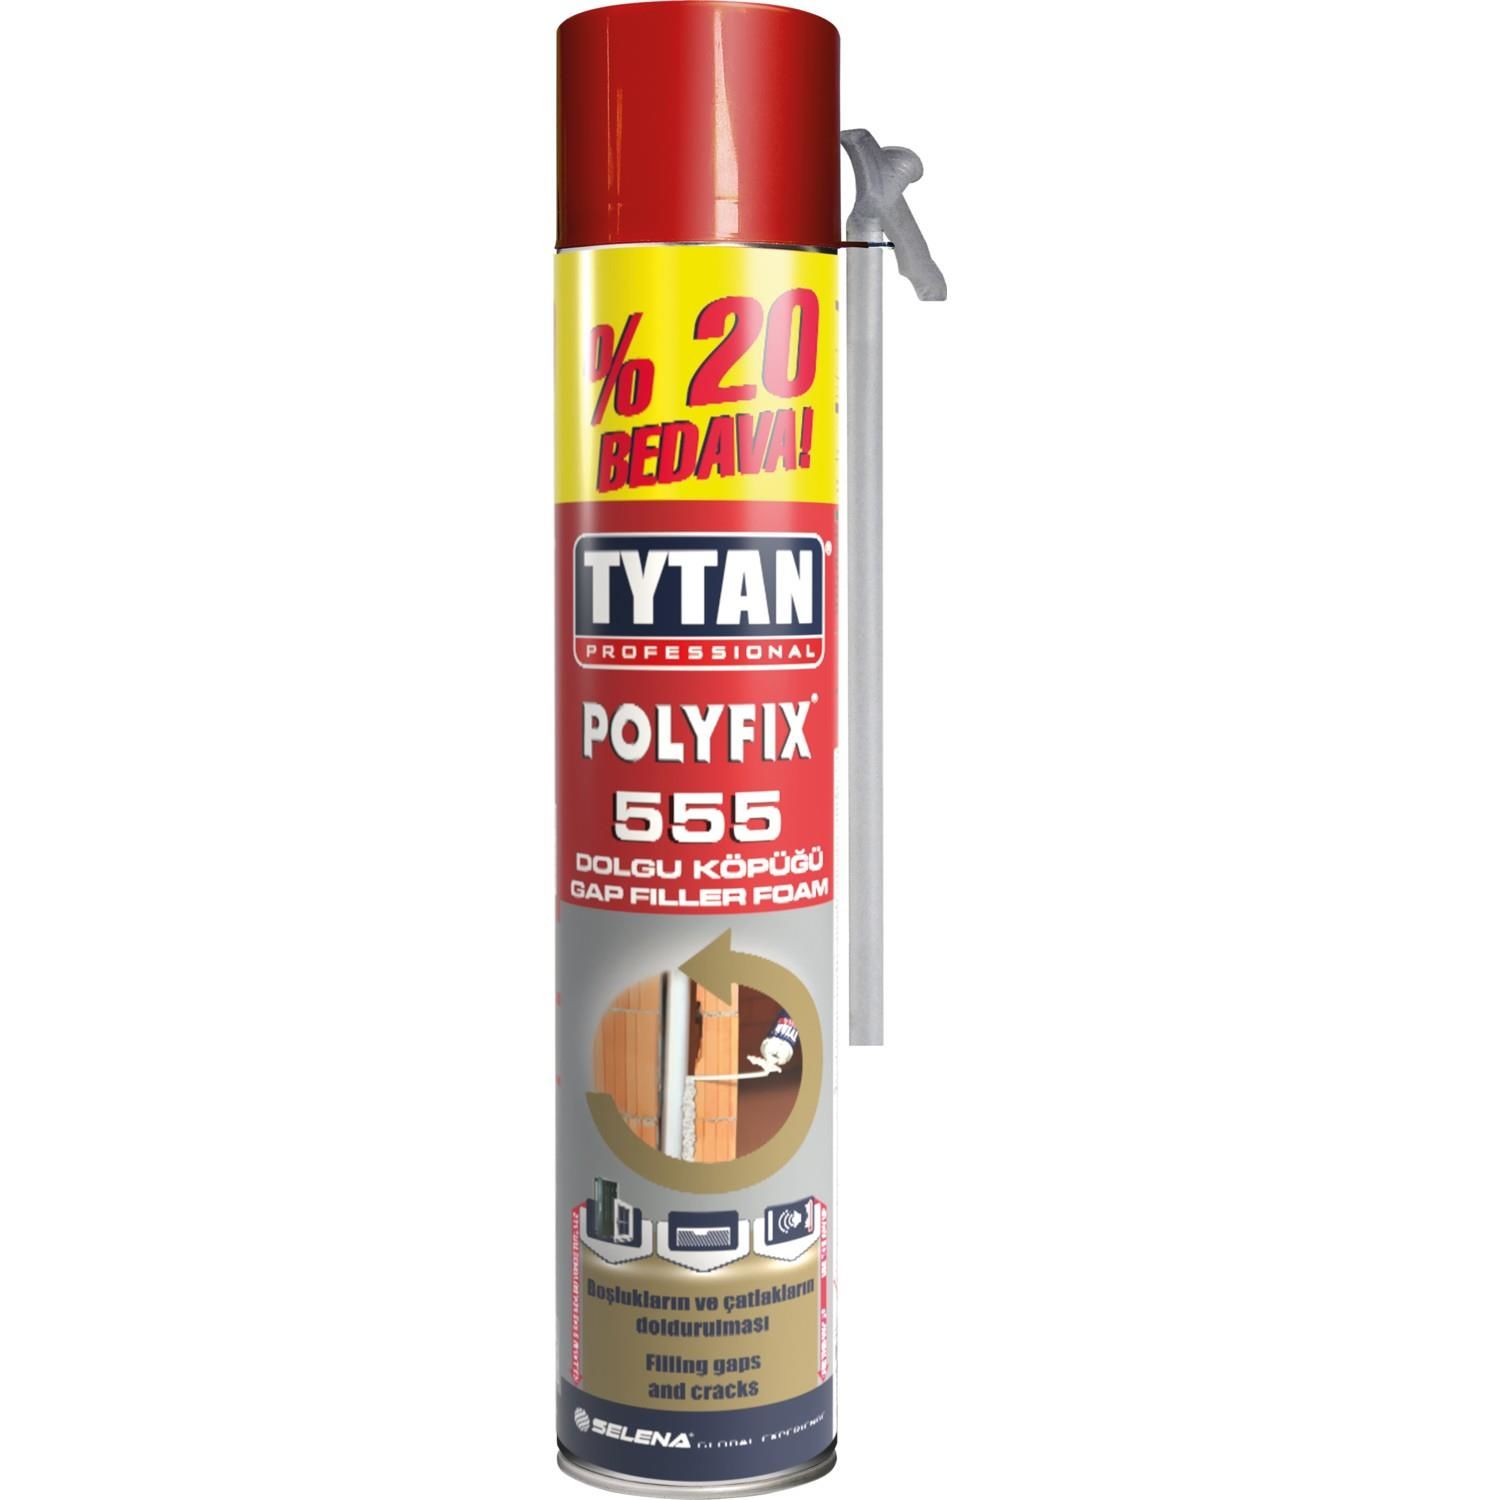 CLZ202 Tytan Polyfix 555 Poliüratan Montaj Köpüğü 555 gr